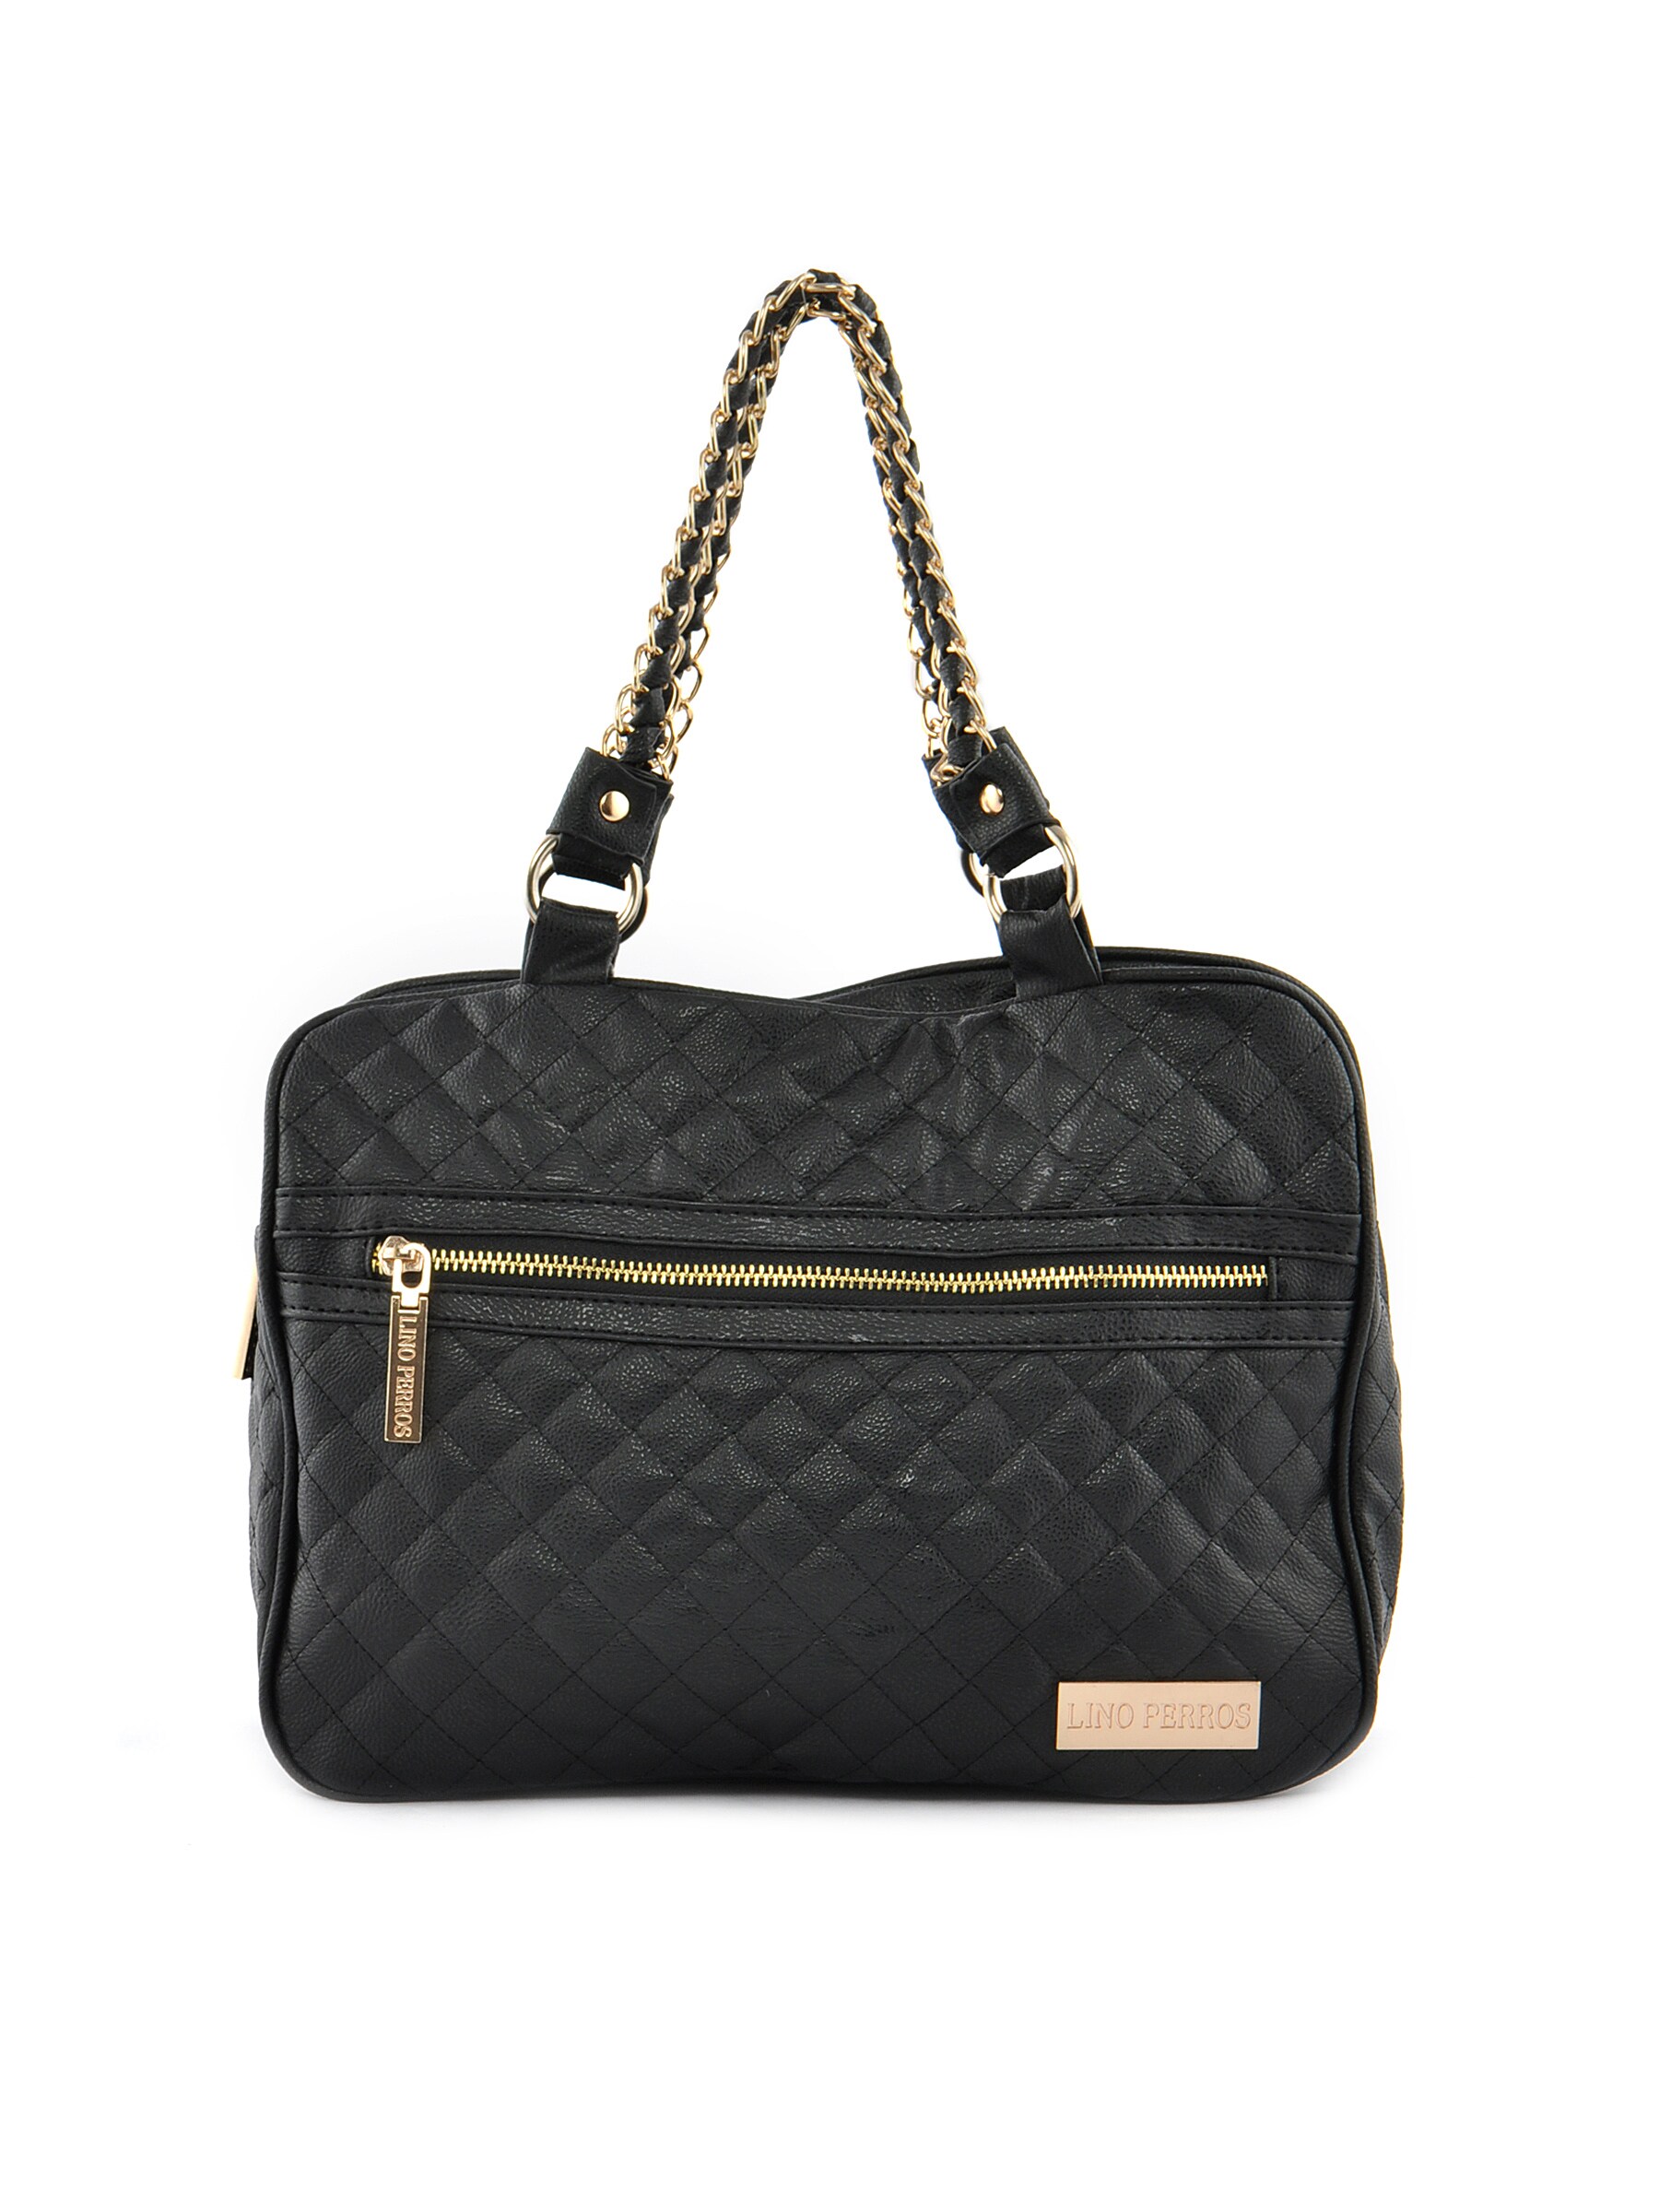 Lino Perros Women Golden Strap Black Handbag